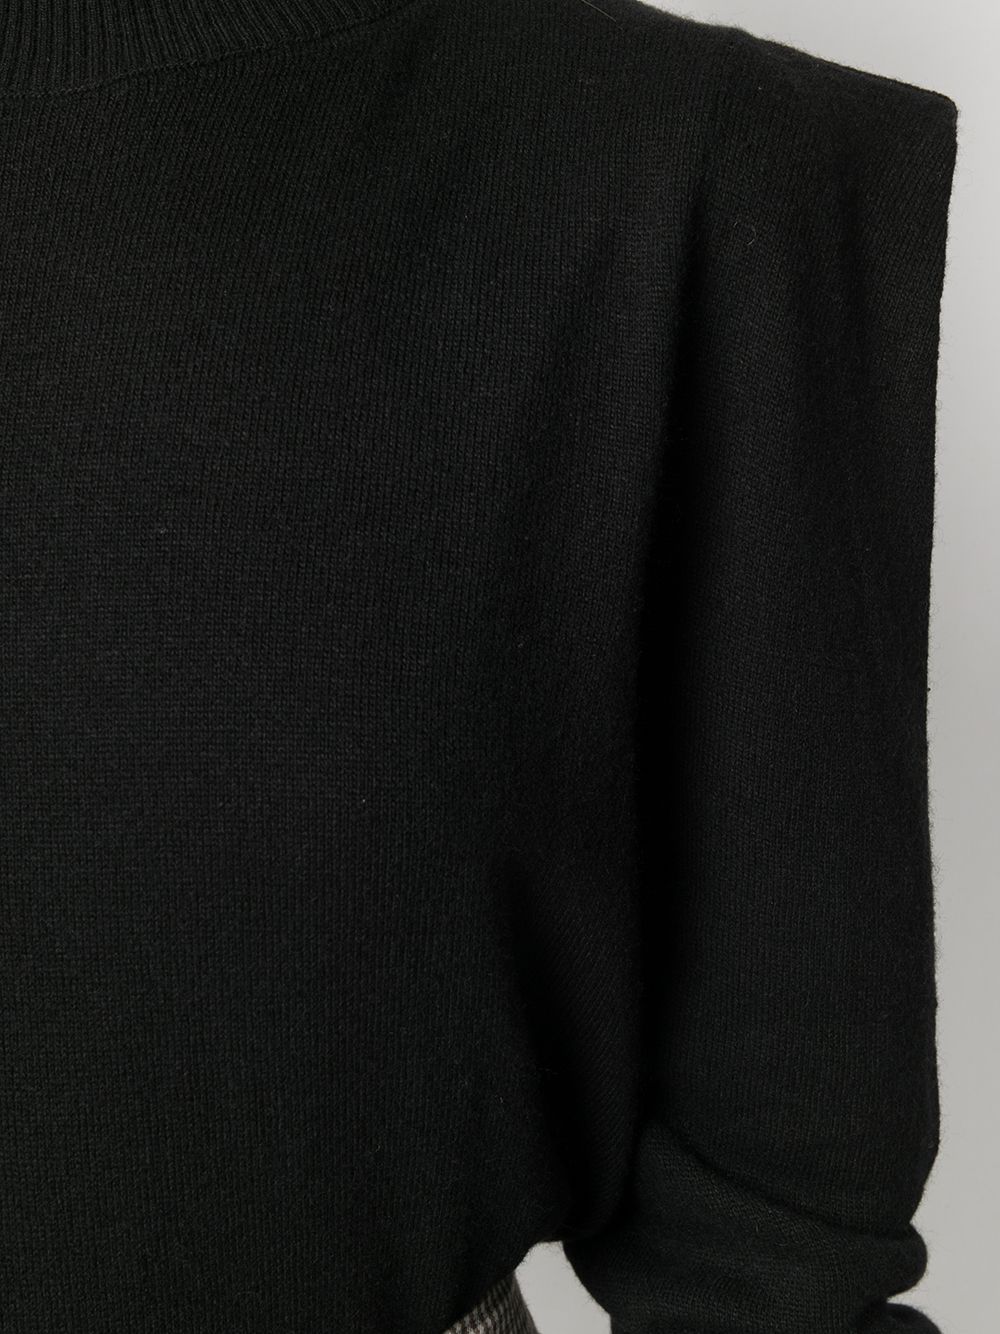 фото Federica tosi свитер с заостренными плечами